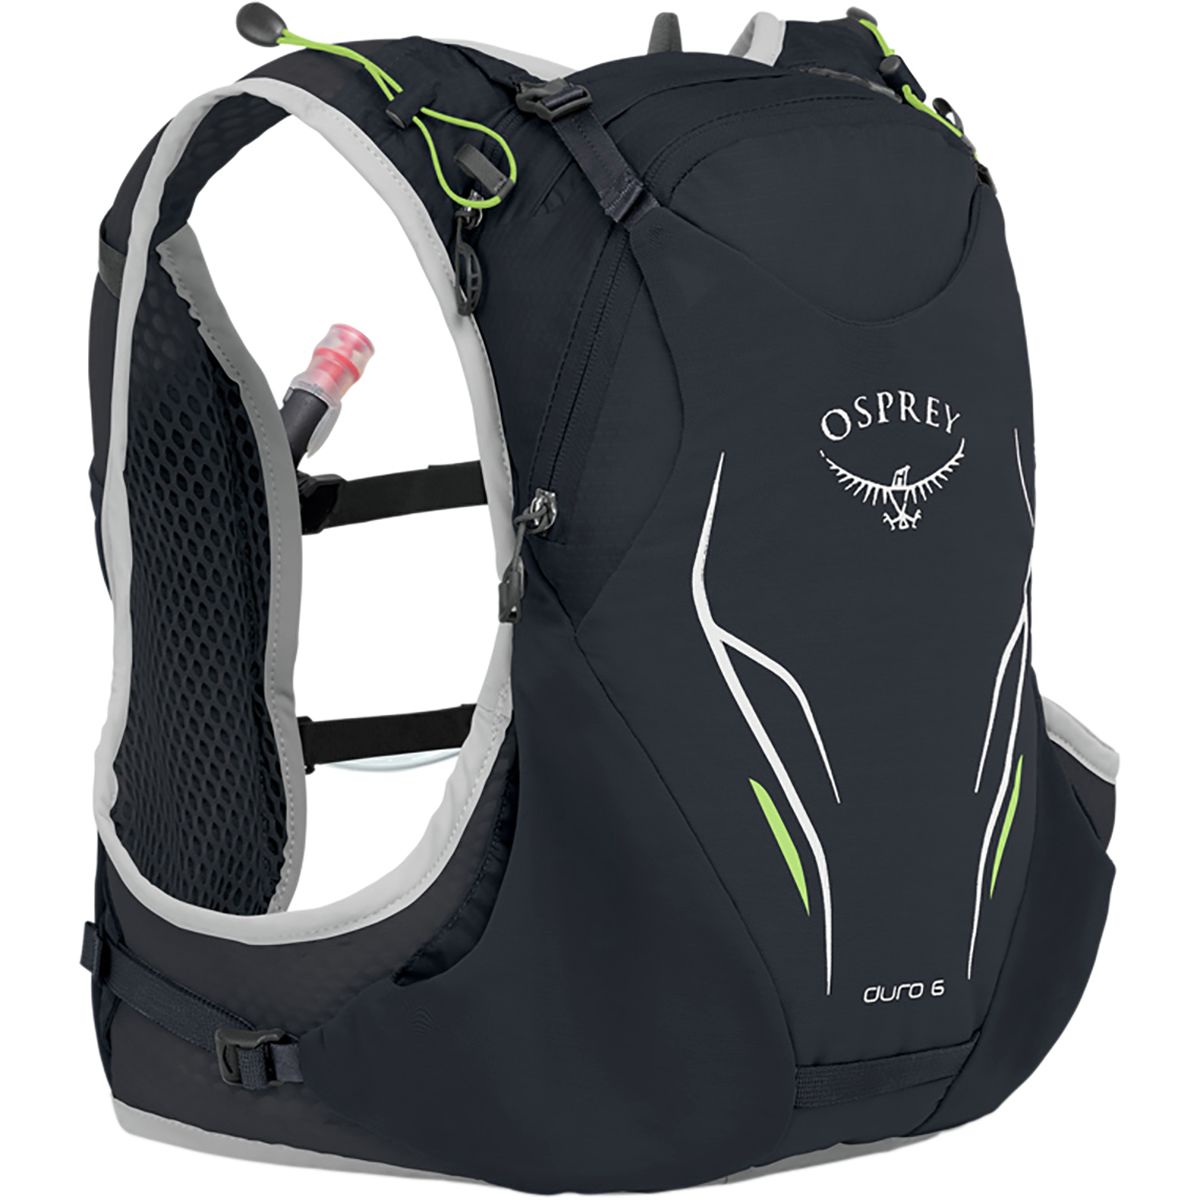 Osprey Packs Duro 6L Backpack